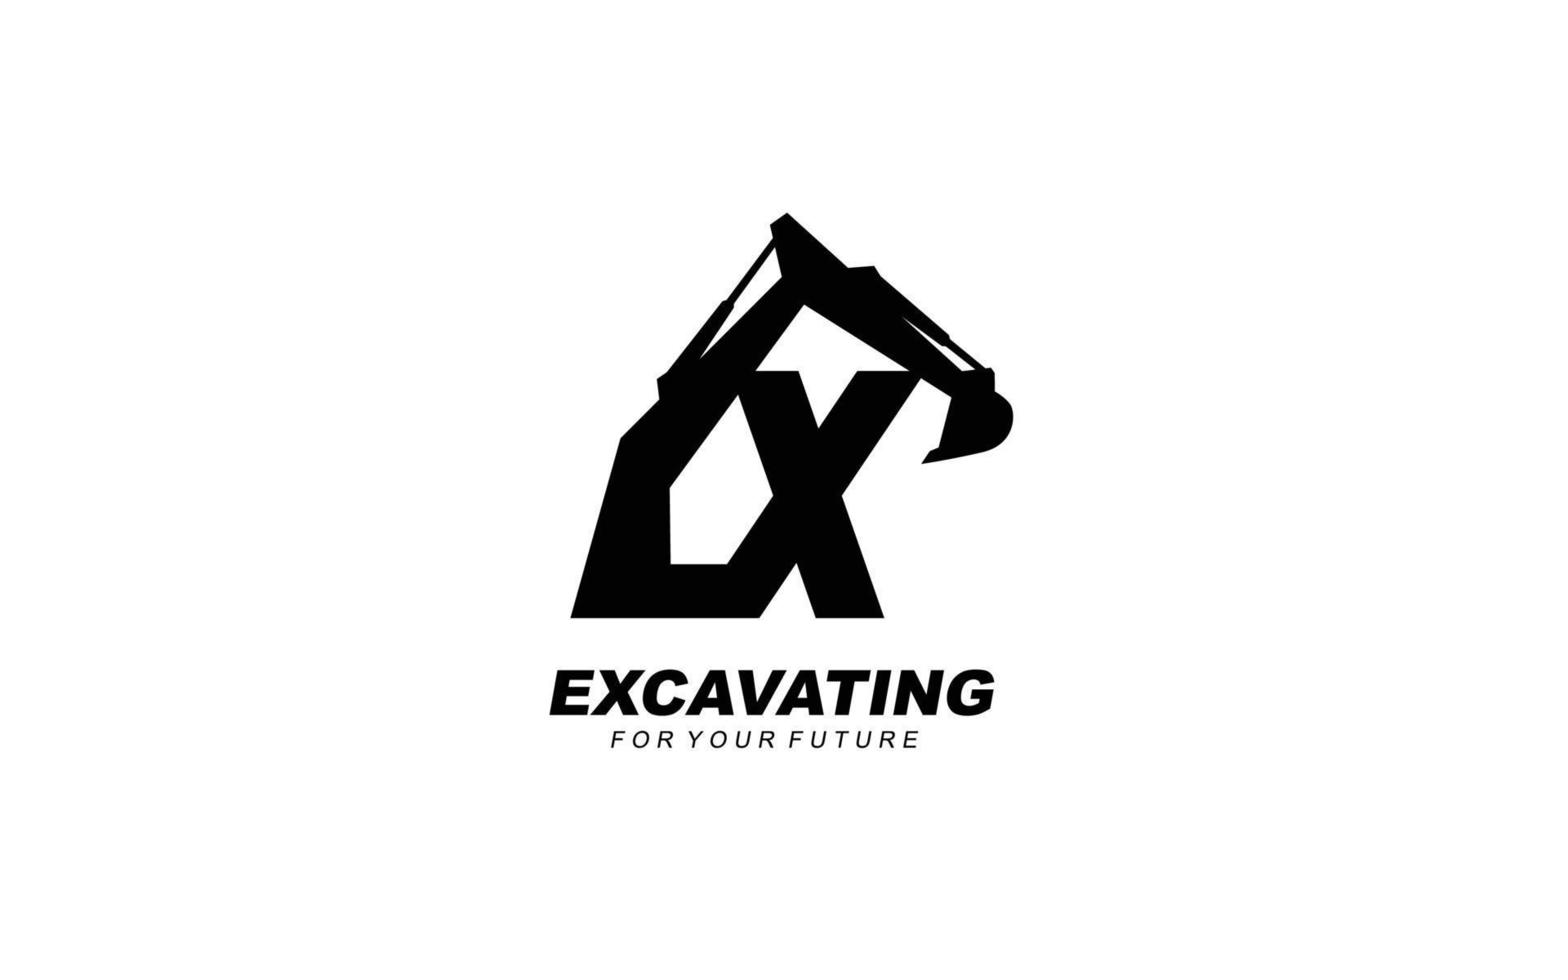 X logo scavatrice per costruzione azienda. pesante attrezzatura modello vettore illustrazione per il tuo marca.